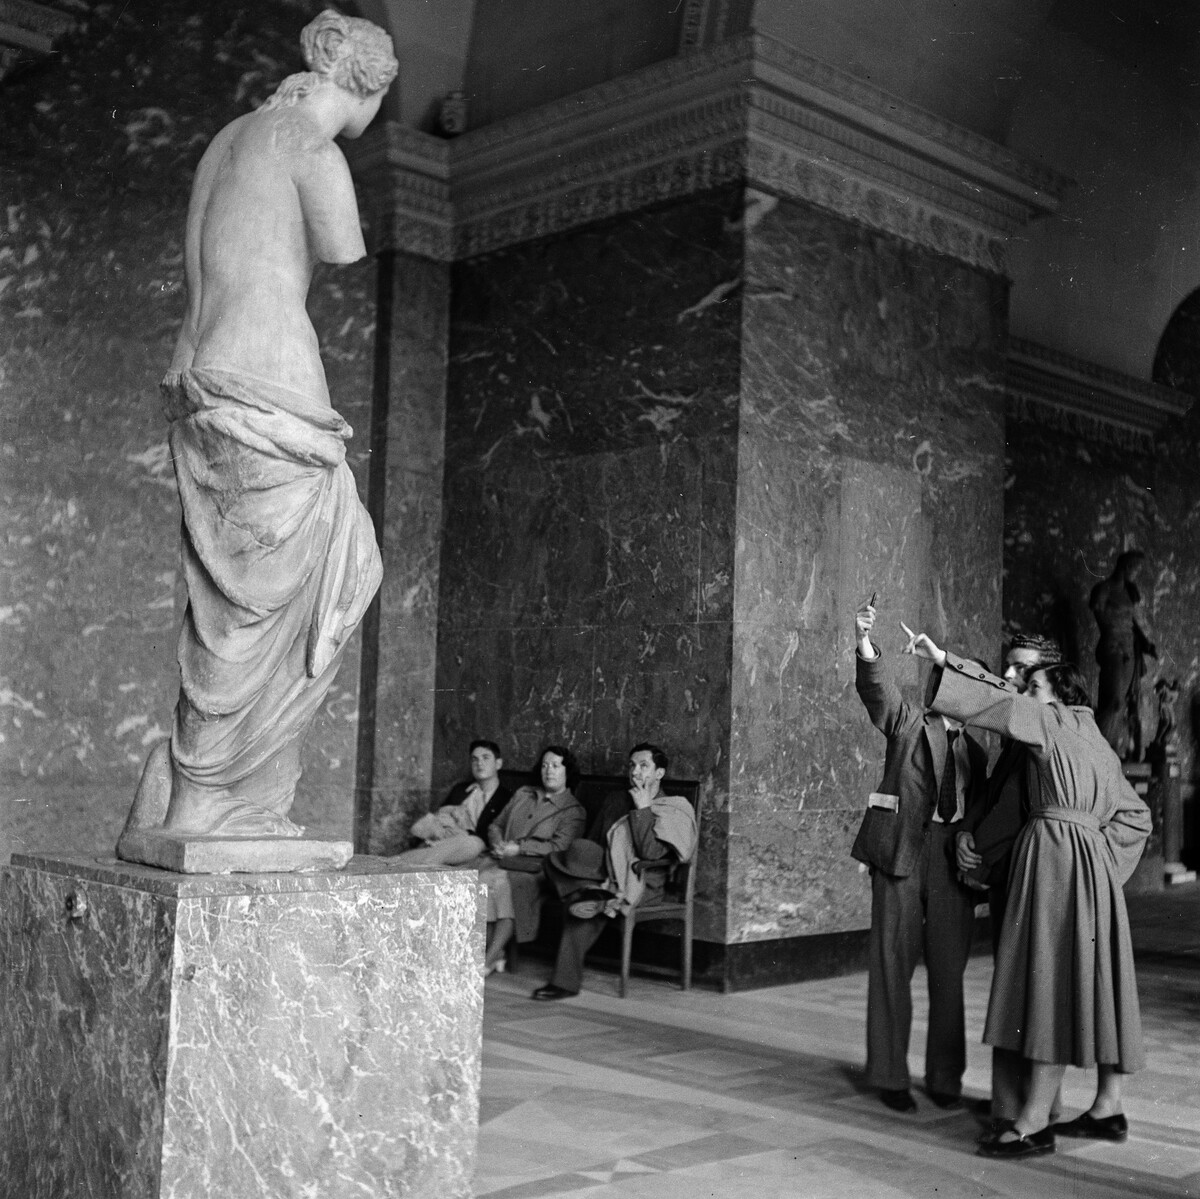 Посетители музея, Париж, ок. 1950. Фотограф Торе Джонсон